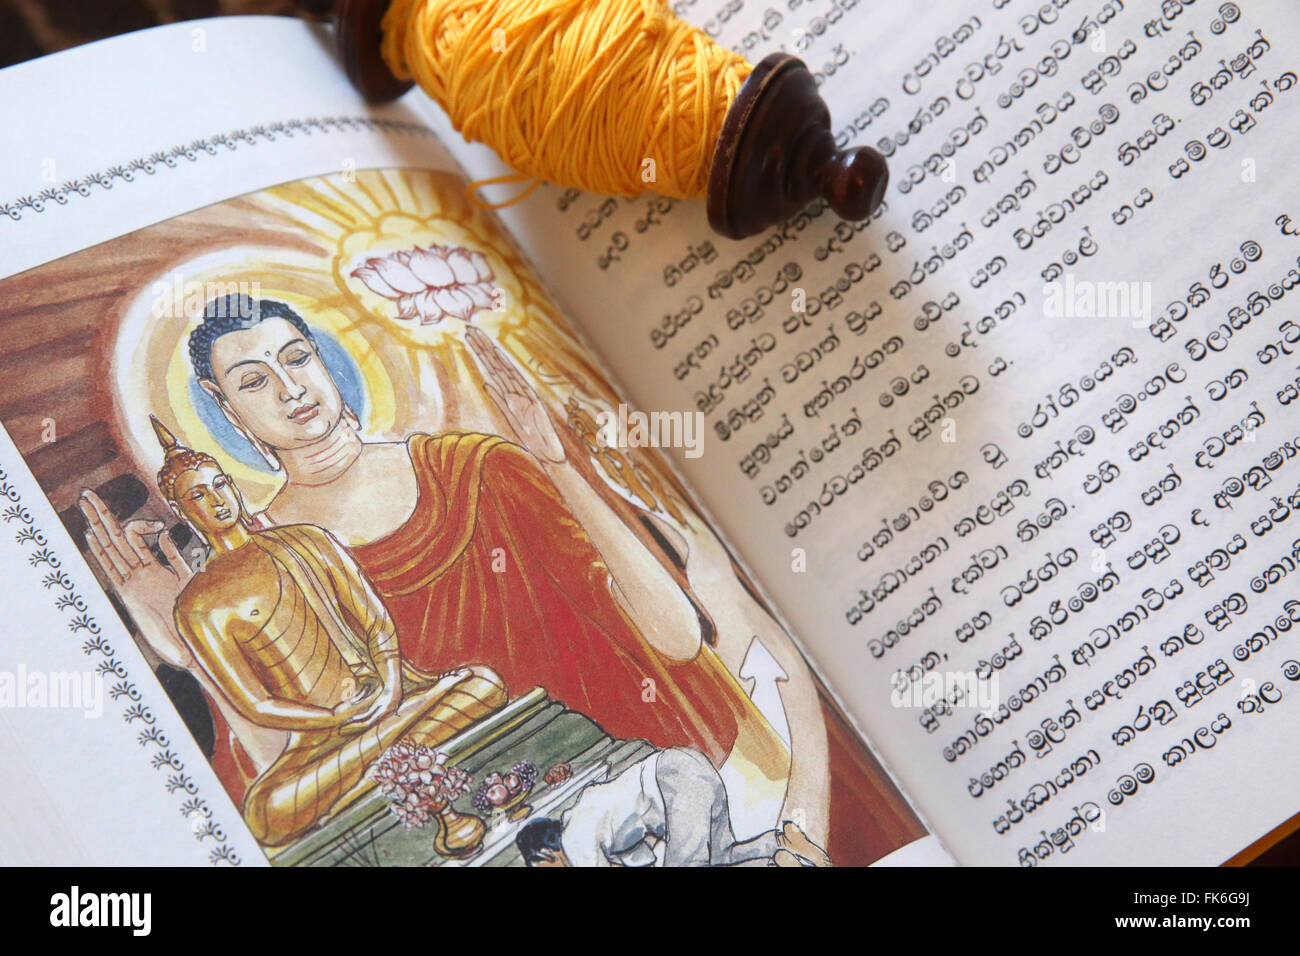 Buddhistischen heiligen Texte und eine Rolle von Sai-Sin (Heilige Gewinde), Leben von Siddhartha Gautama, der oberste Buddha, Genf, Schweiz Stockfoto